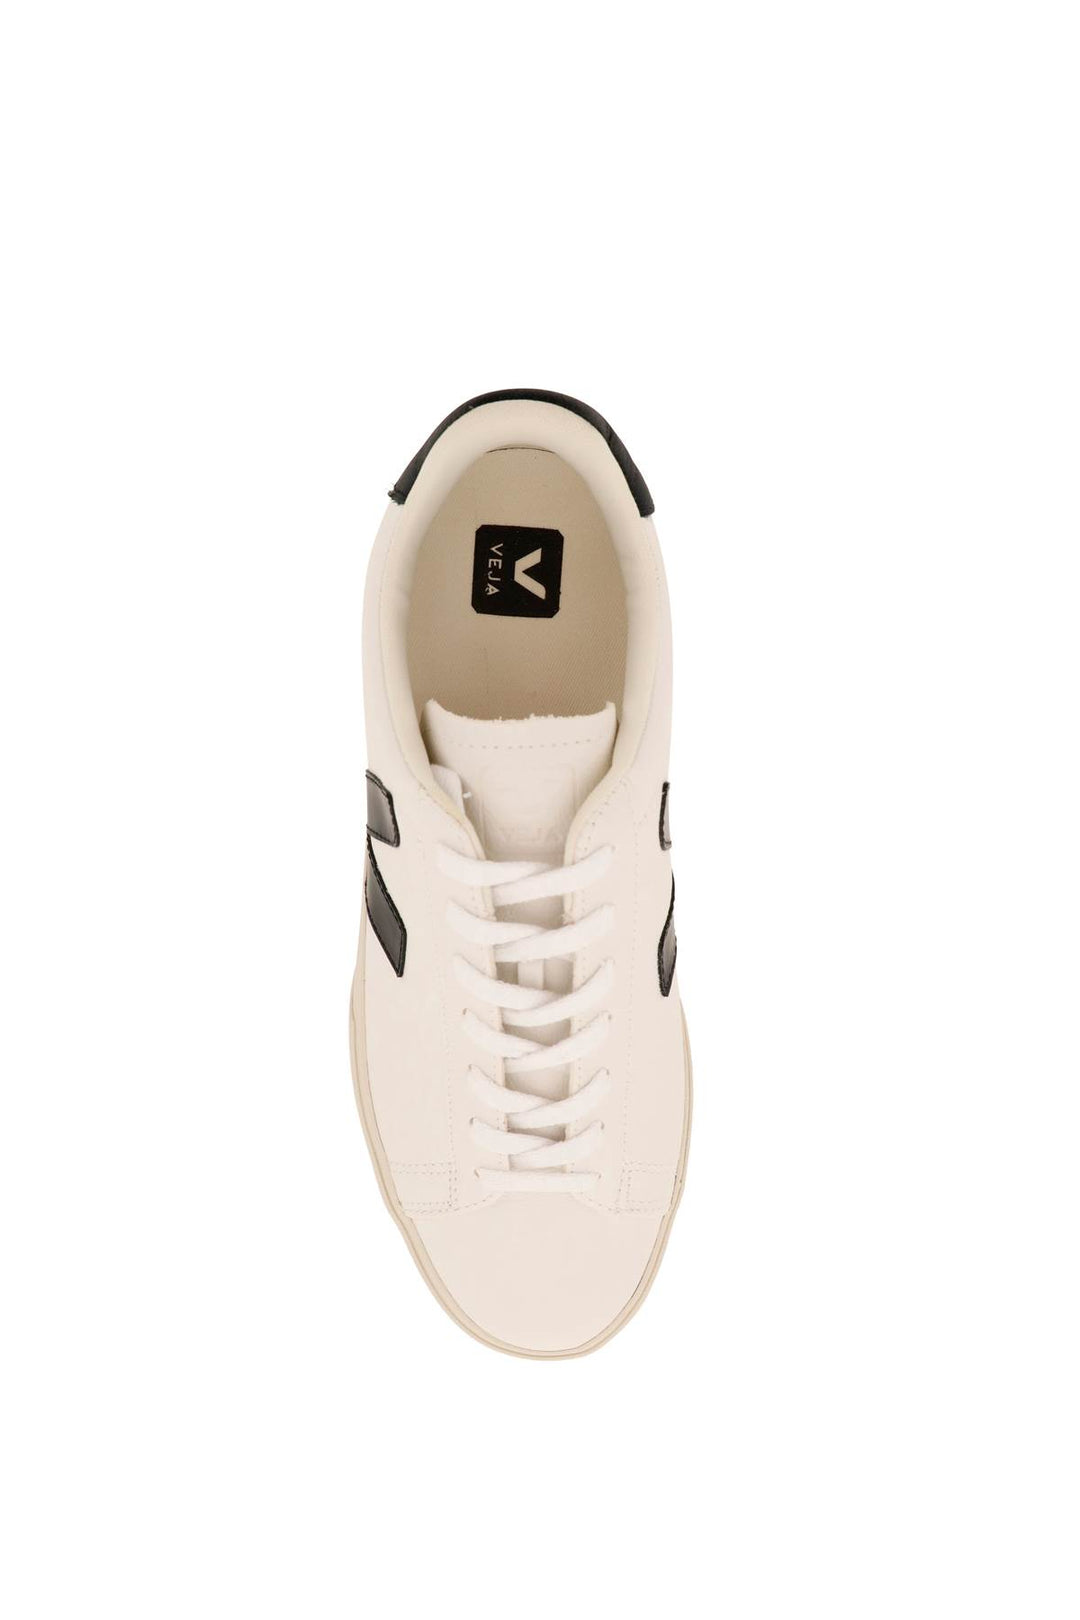 Veja Campo Sneakers   Bianco